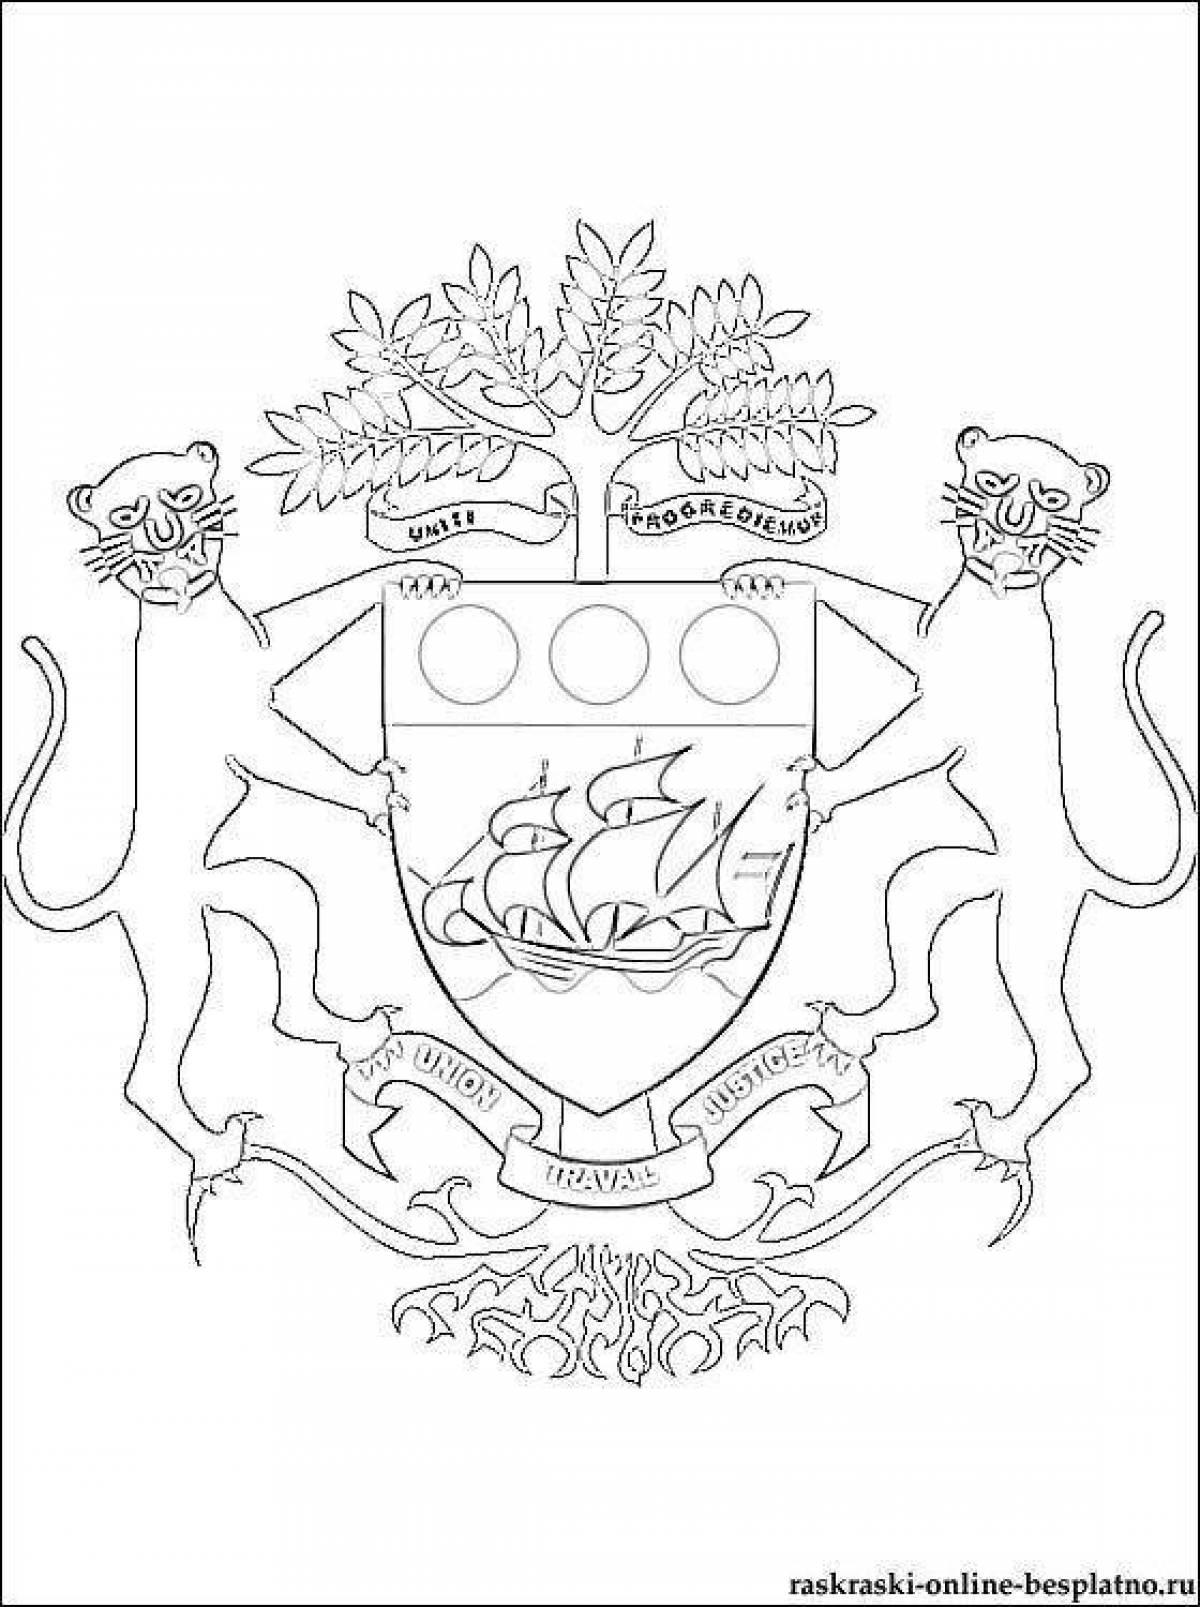 Семейный герб для печати